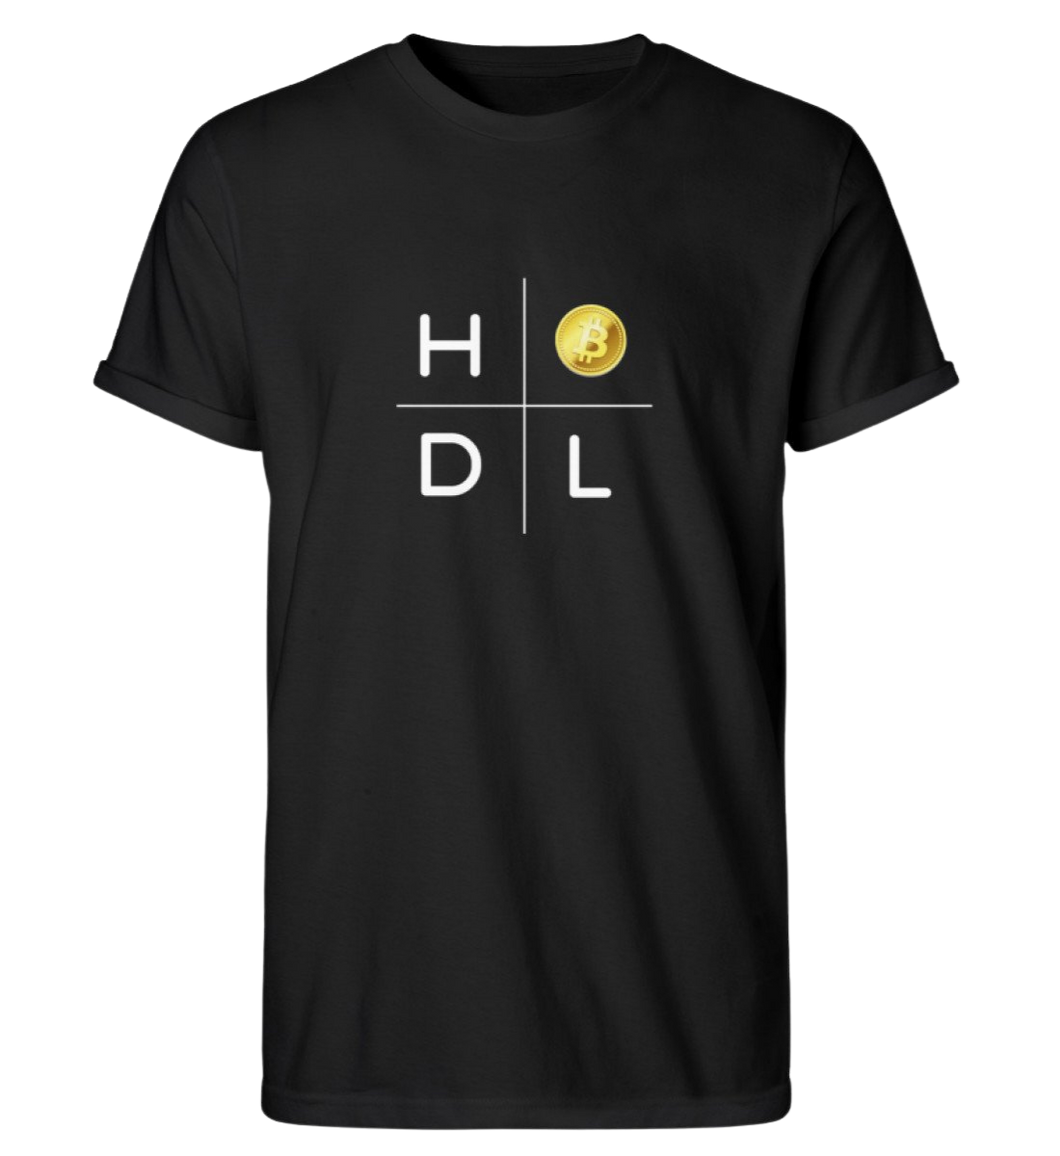 Bitcoin HODL  Rp T-Shirt